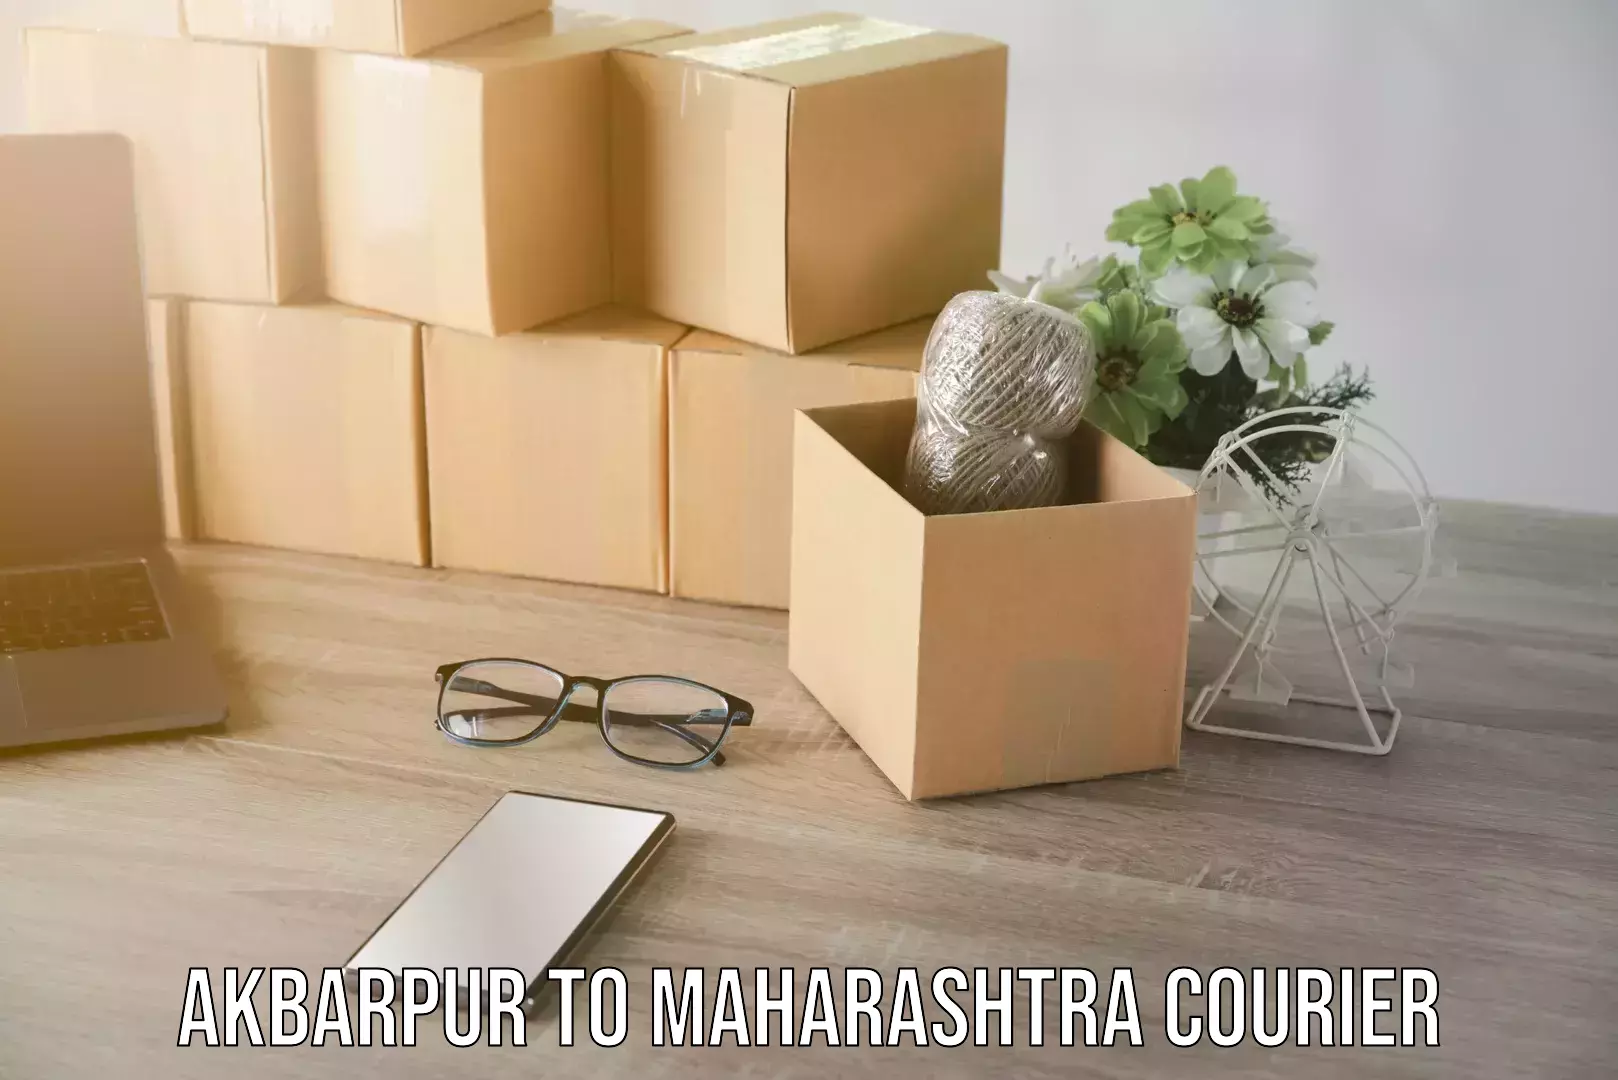 Seamless shipping experience Akbarpur to Maharashtra